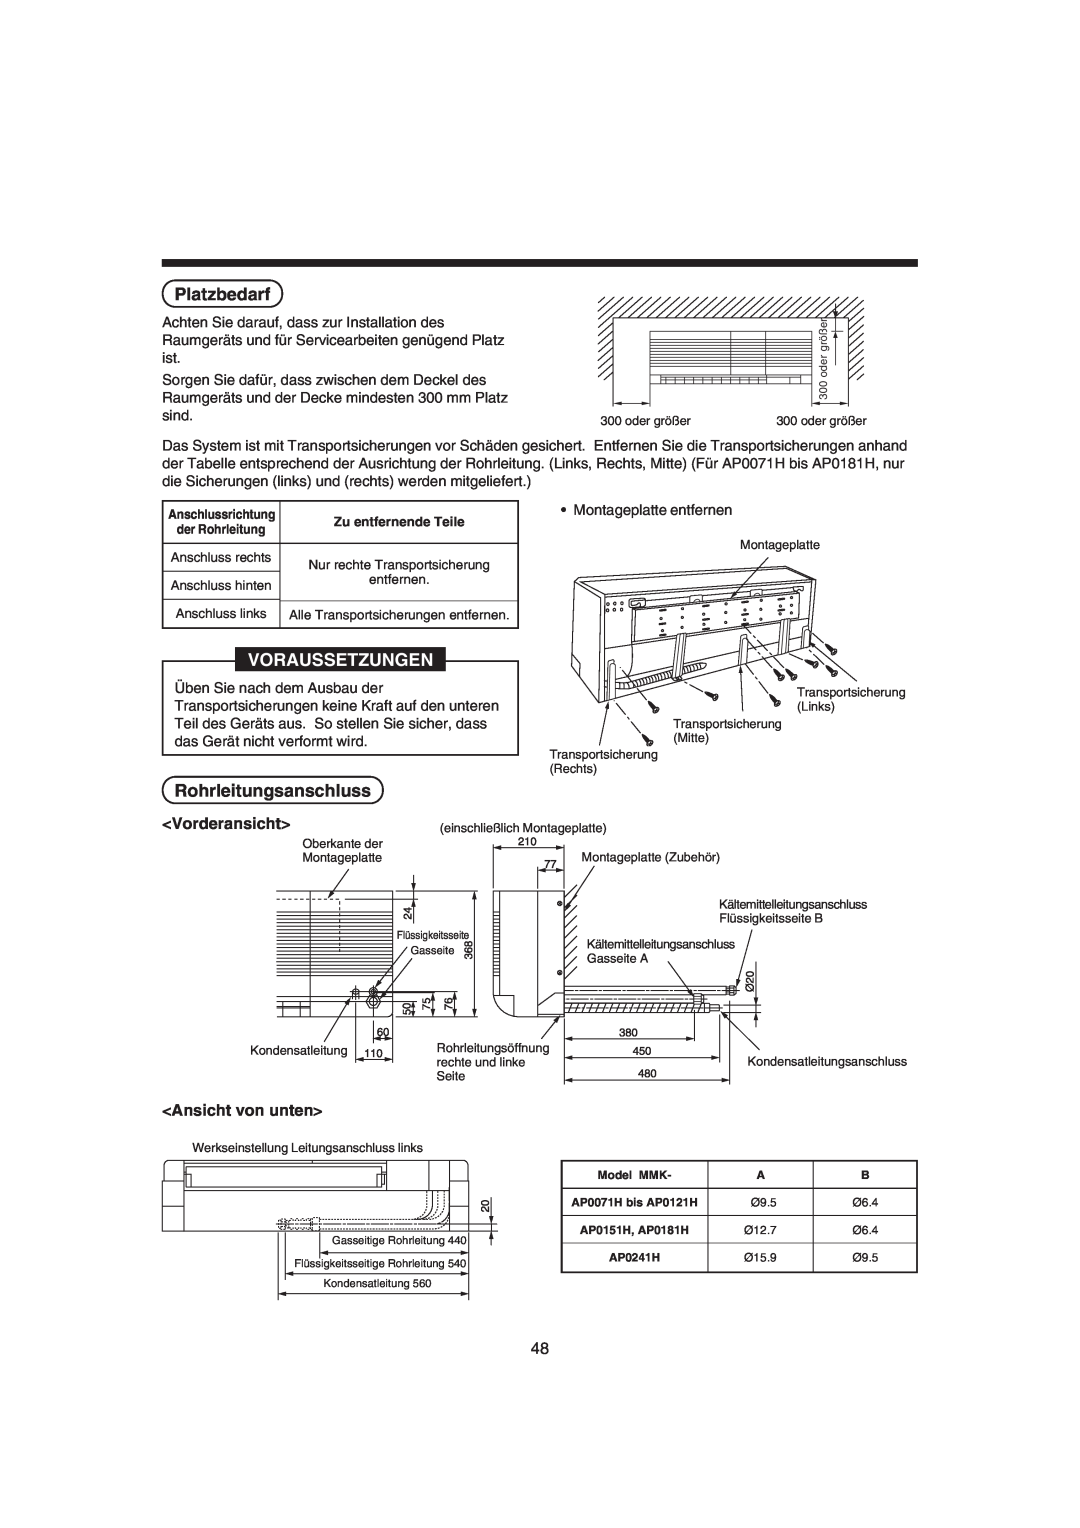 Pentax MMK-AP0121H, MMK-AP0181H Platzbedarf, Voraussetzungen, Rohrleitungsanschluss, <Vorderansicht>, <Ansicht von unten> 